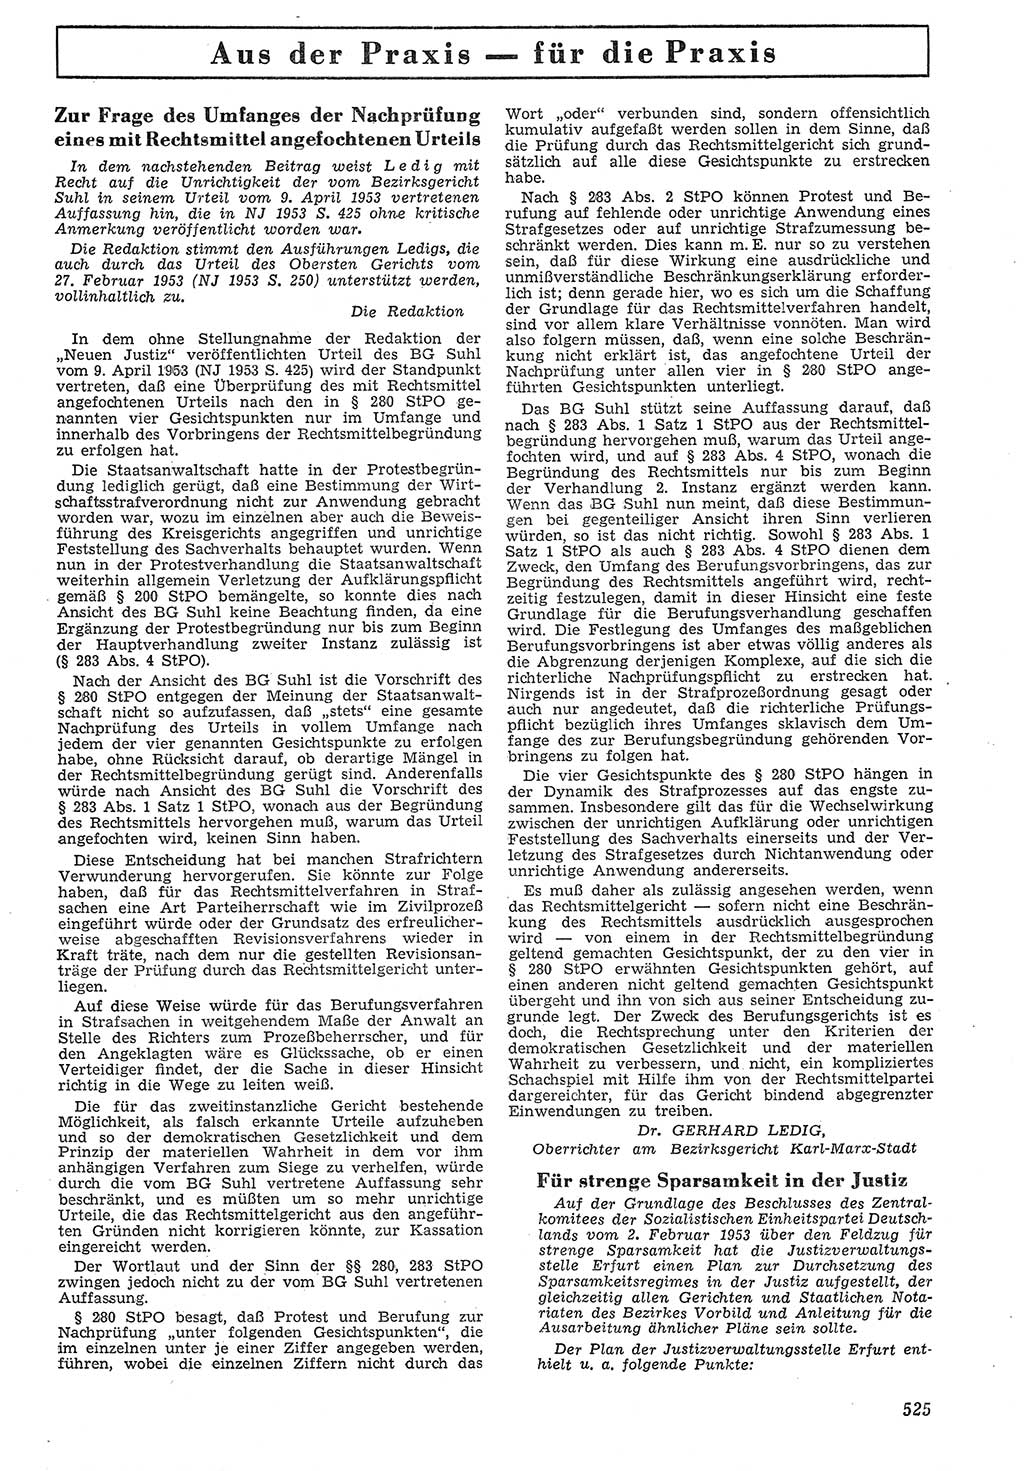 Neue Justiz (NJ), Zeitschrift für Recht und Rechtswissenschaft [Deutsche Demokratische Republik (DDR)], 7. Jahrgang 1953, Seite 525 (NJ DDR 1953, S. 525)